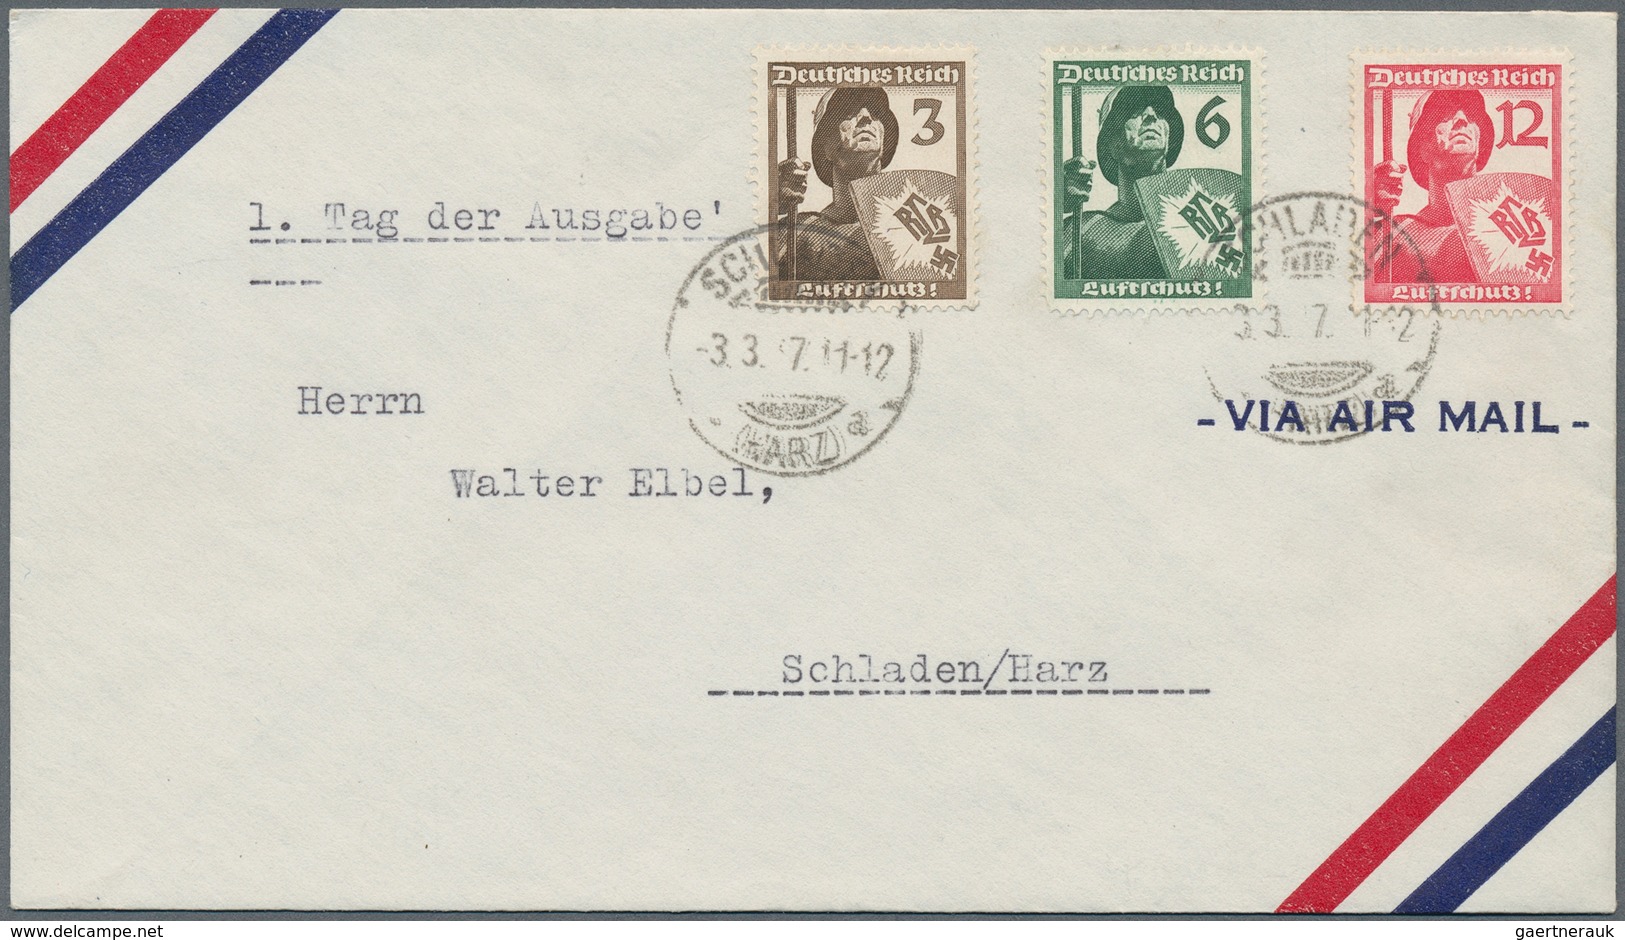 Deutsches Reich - 3. Reich: 1933/1944, Sammlungsbestand von ca. 68 Ersttags-Briefen/-Karten, dabei u